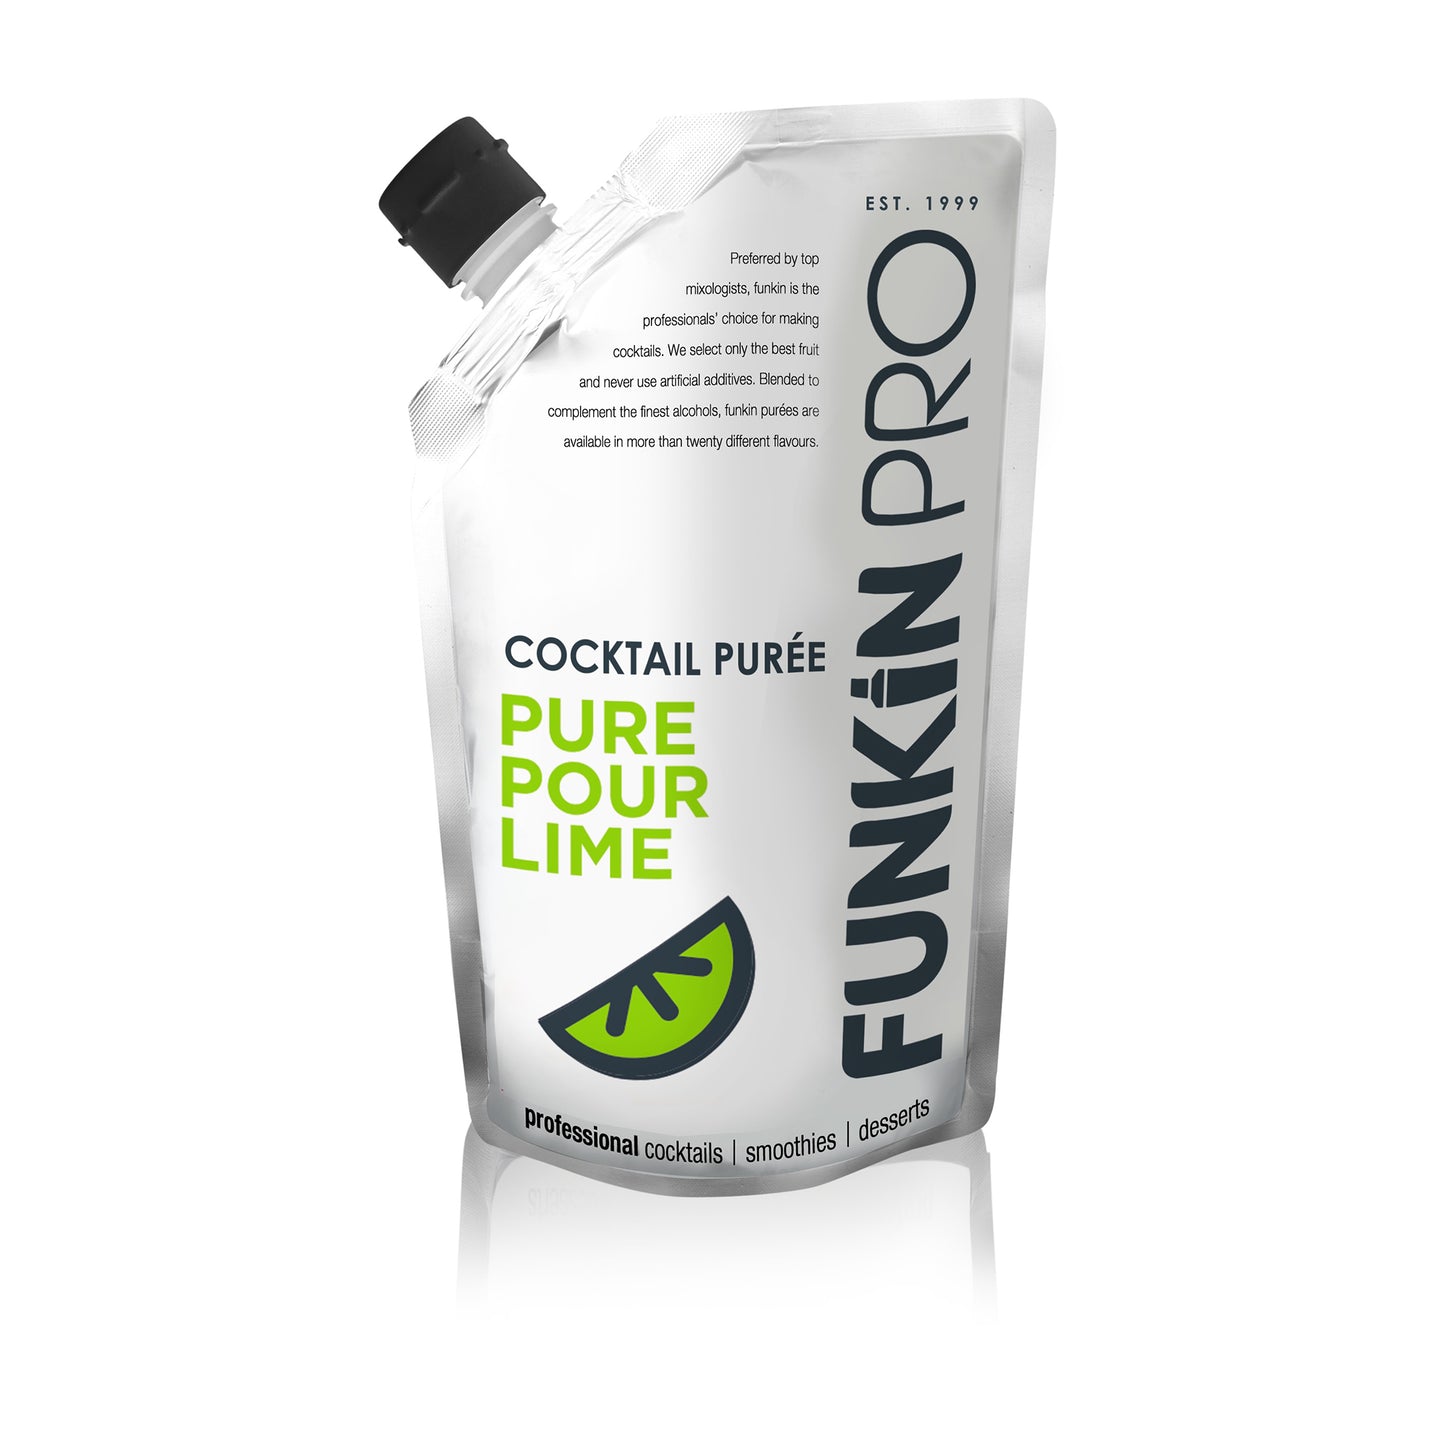 Funkin Lime Juice 1kg